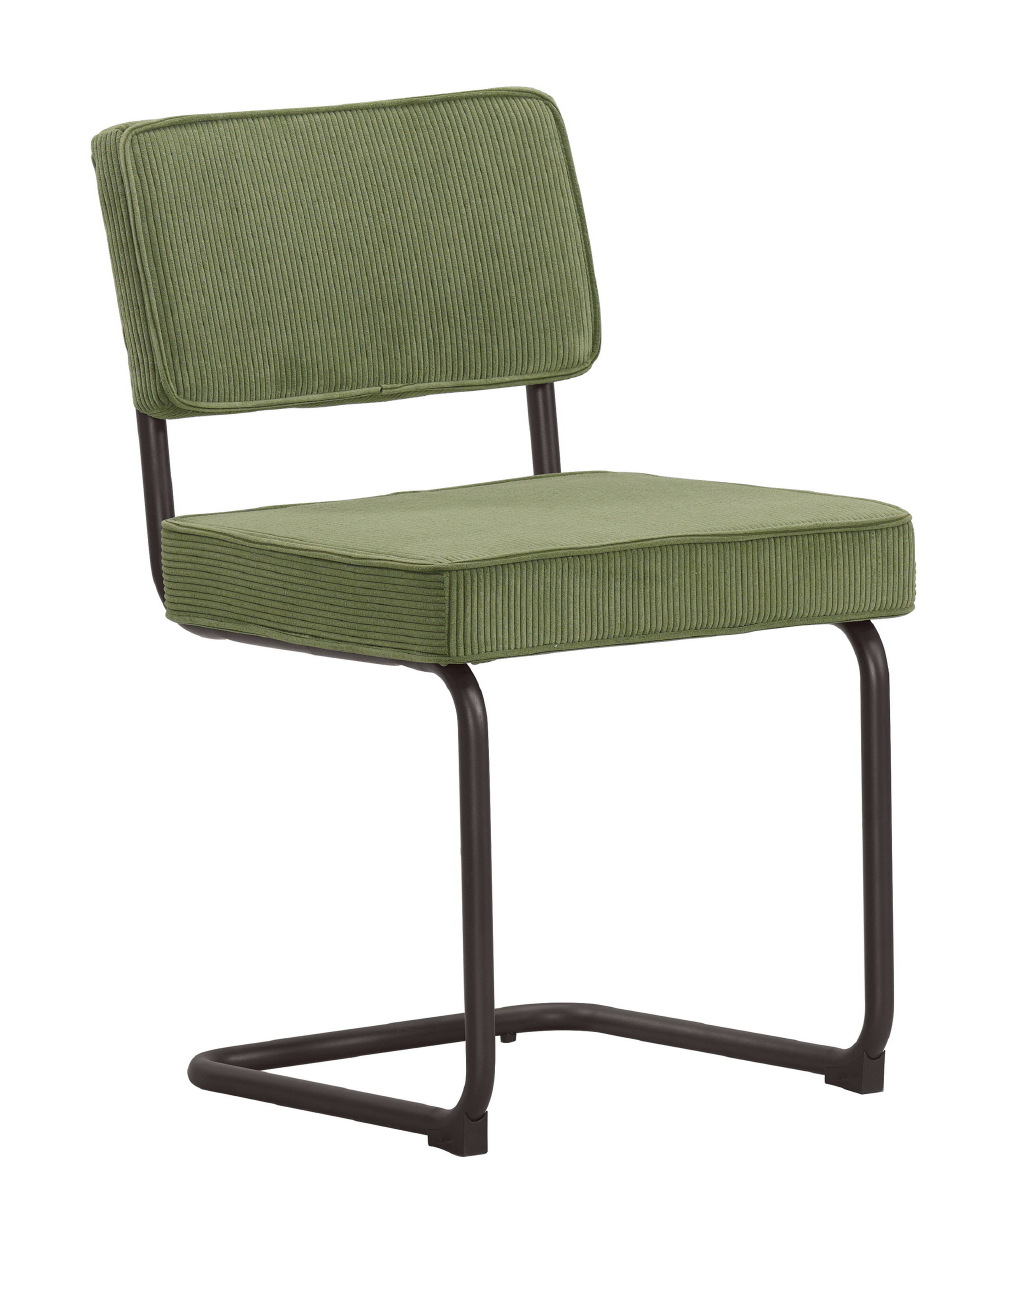 凱琳餐椅(綠色布)(五金腳)